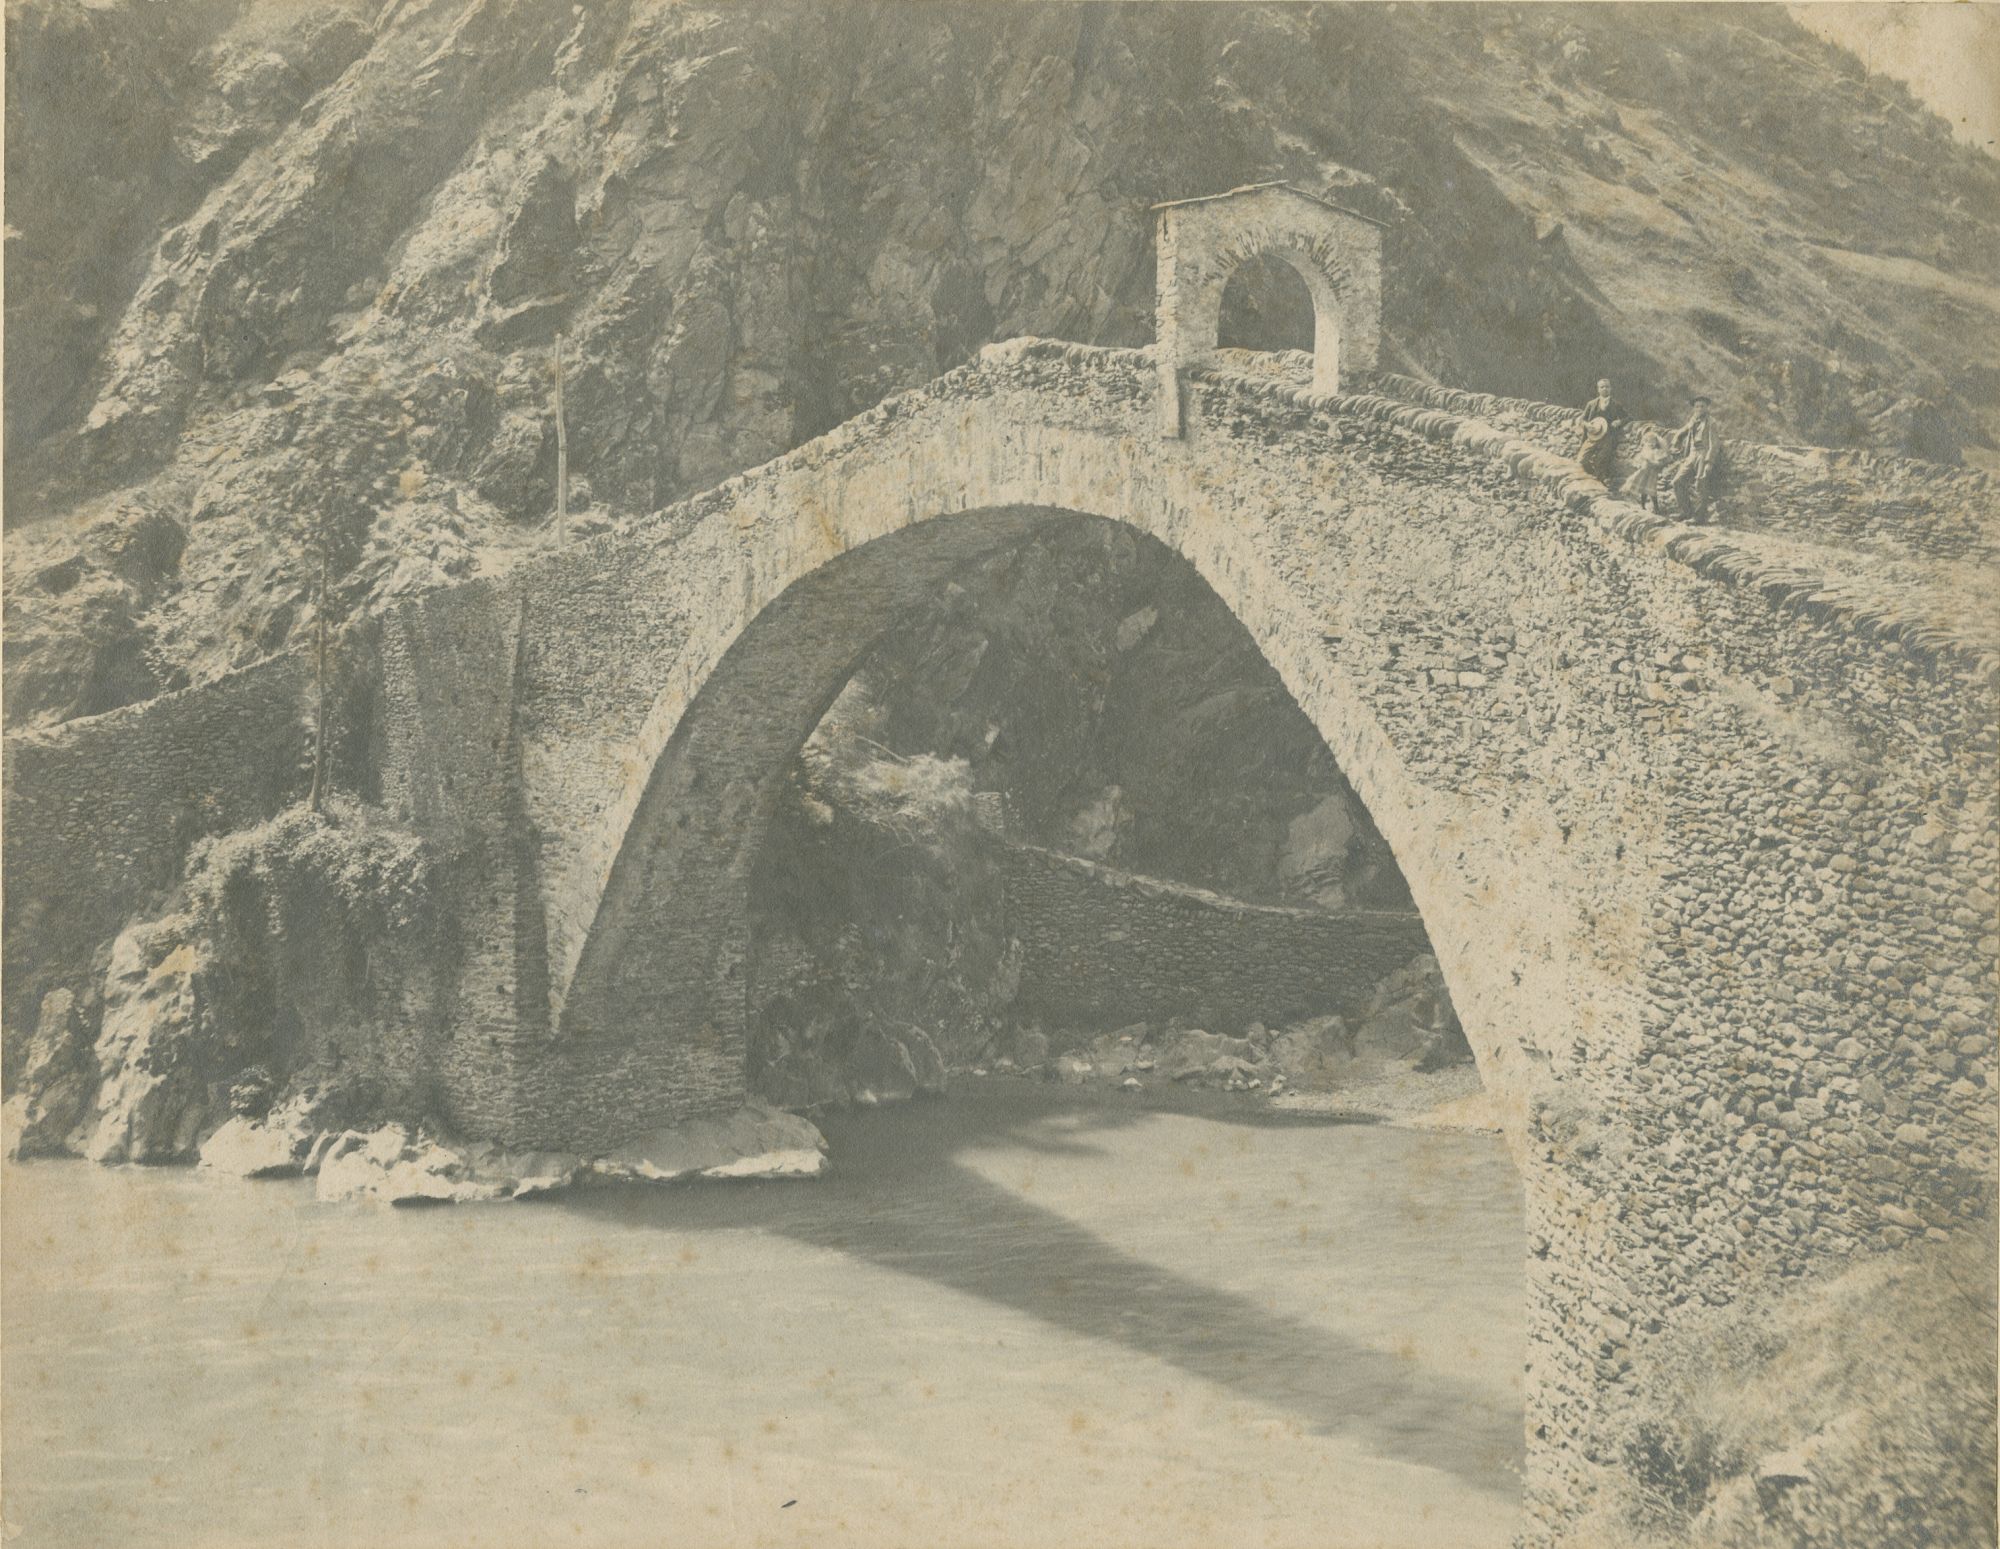 Lanzo Torinese - Ponte del Diavolo (positivo) di Germano, Ottavio (attr) (fine/ inizio XIX/ XX)